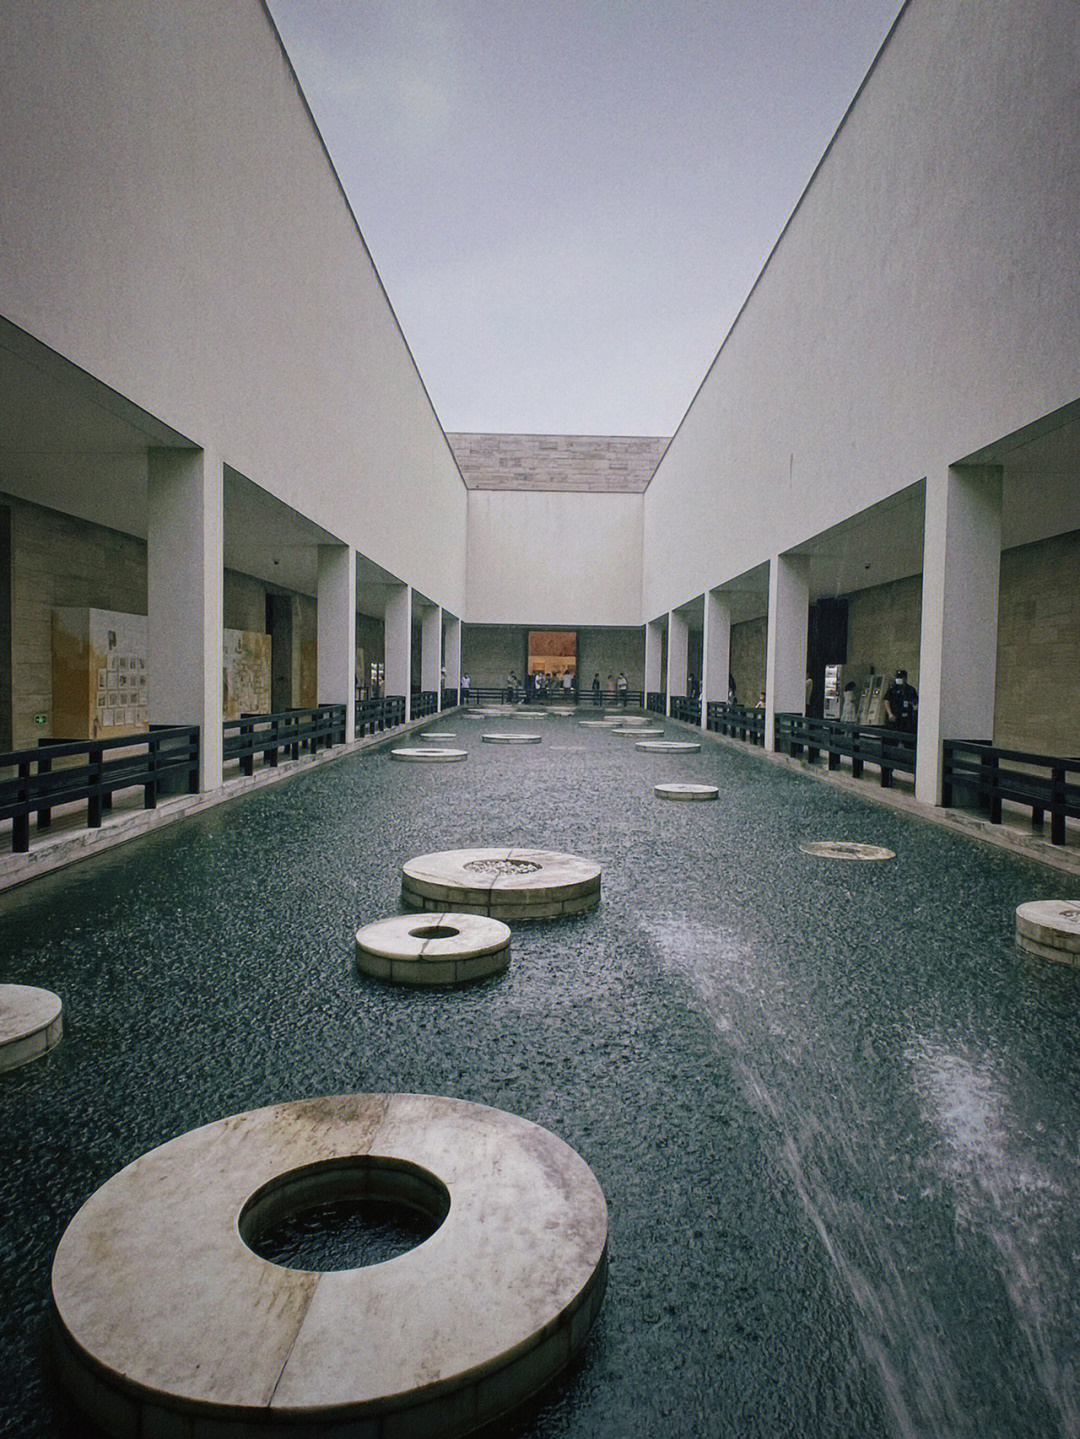 良渚博物馆预约参观图片